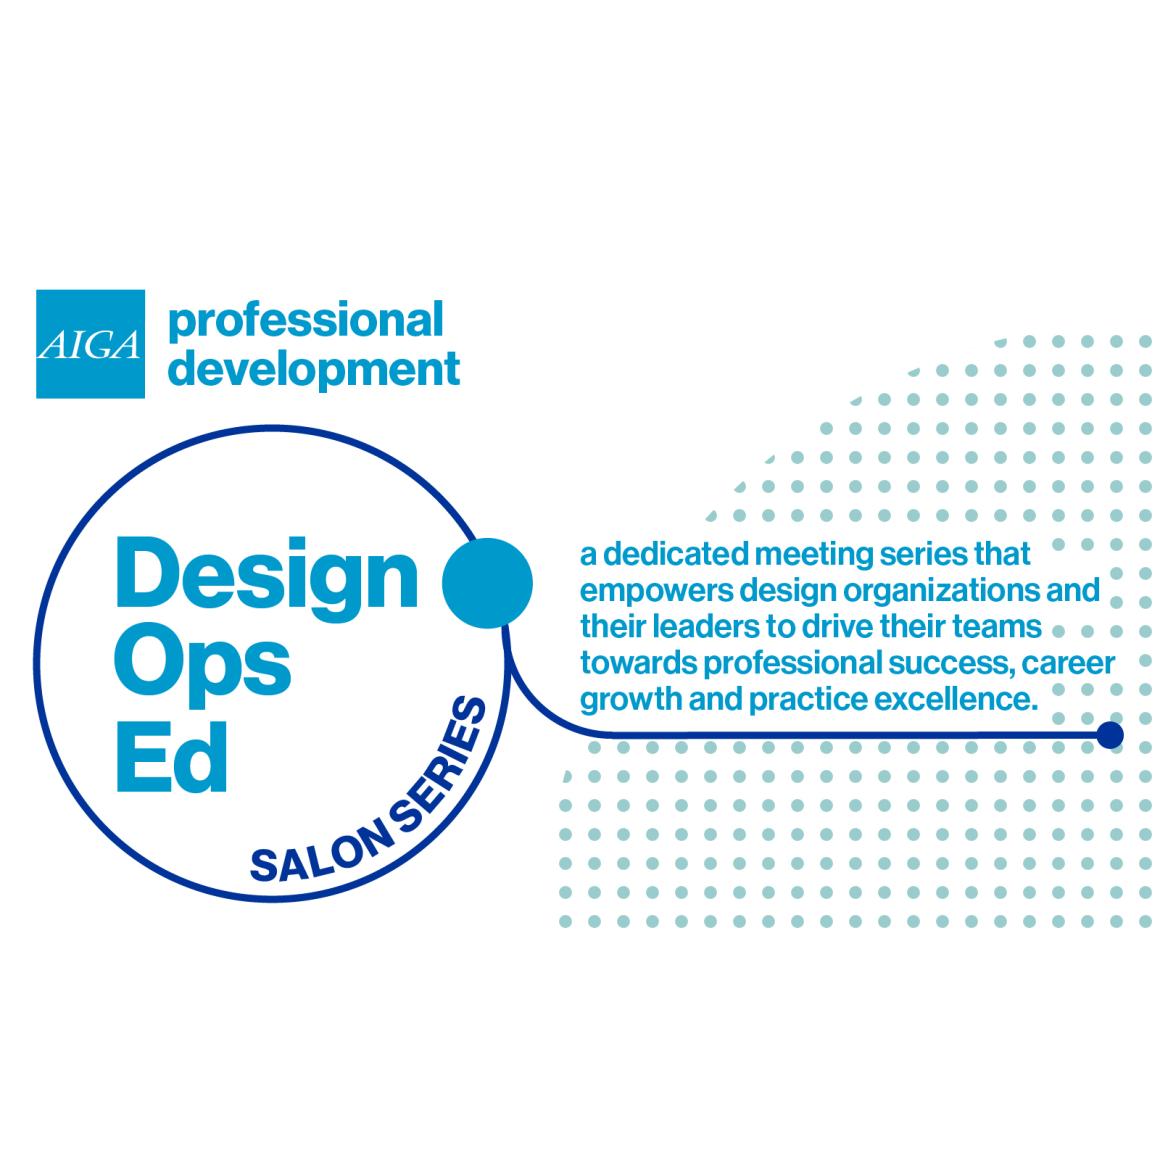 DesignOps Ed